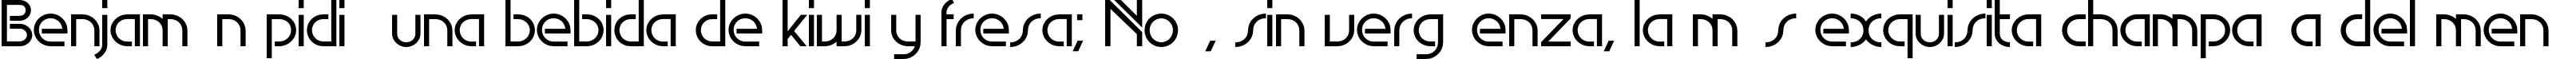 Пример написания шрифтом EdgeLine Bold текста на испанском